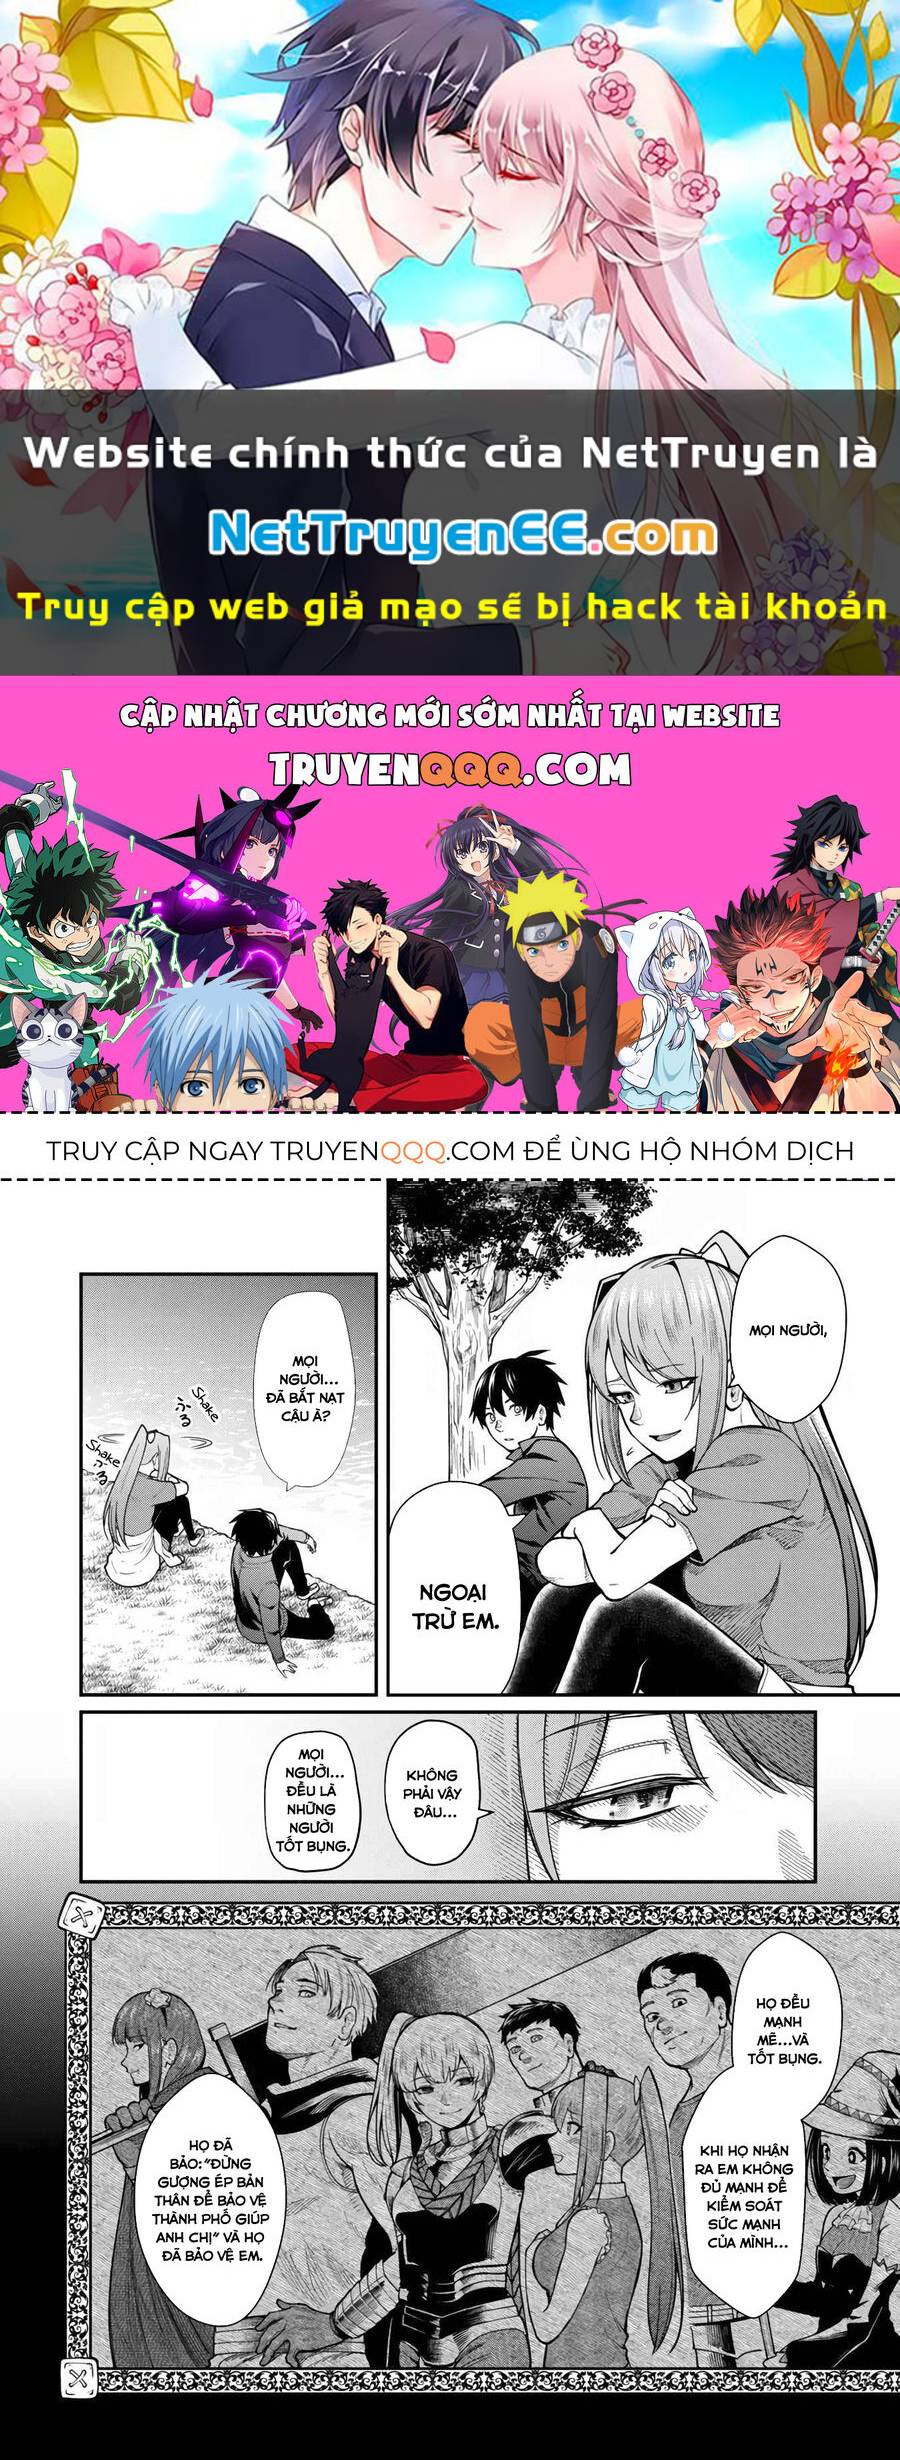 Kết Luận: Tại Sao Manga Tình Cảm Lại Hấp Dẫn Đến Vậy?